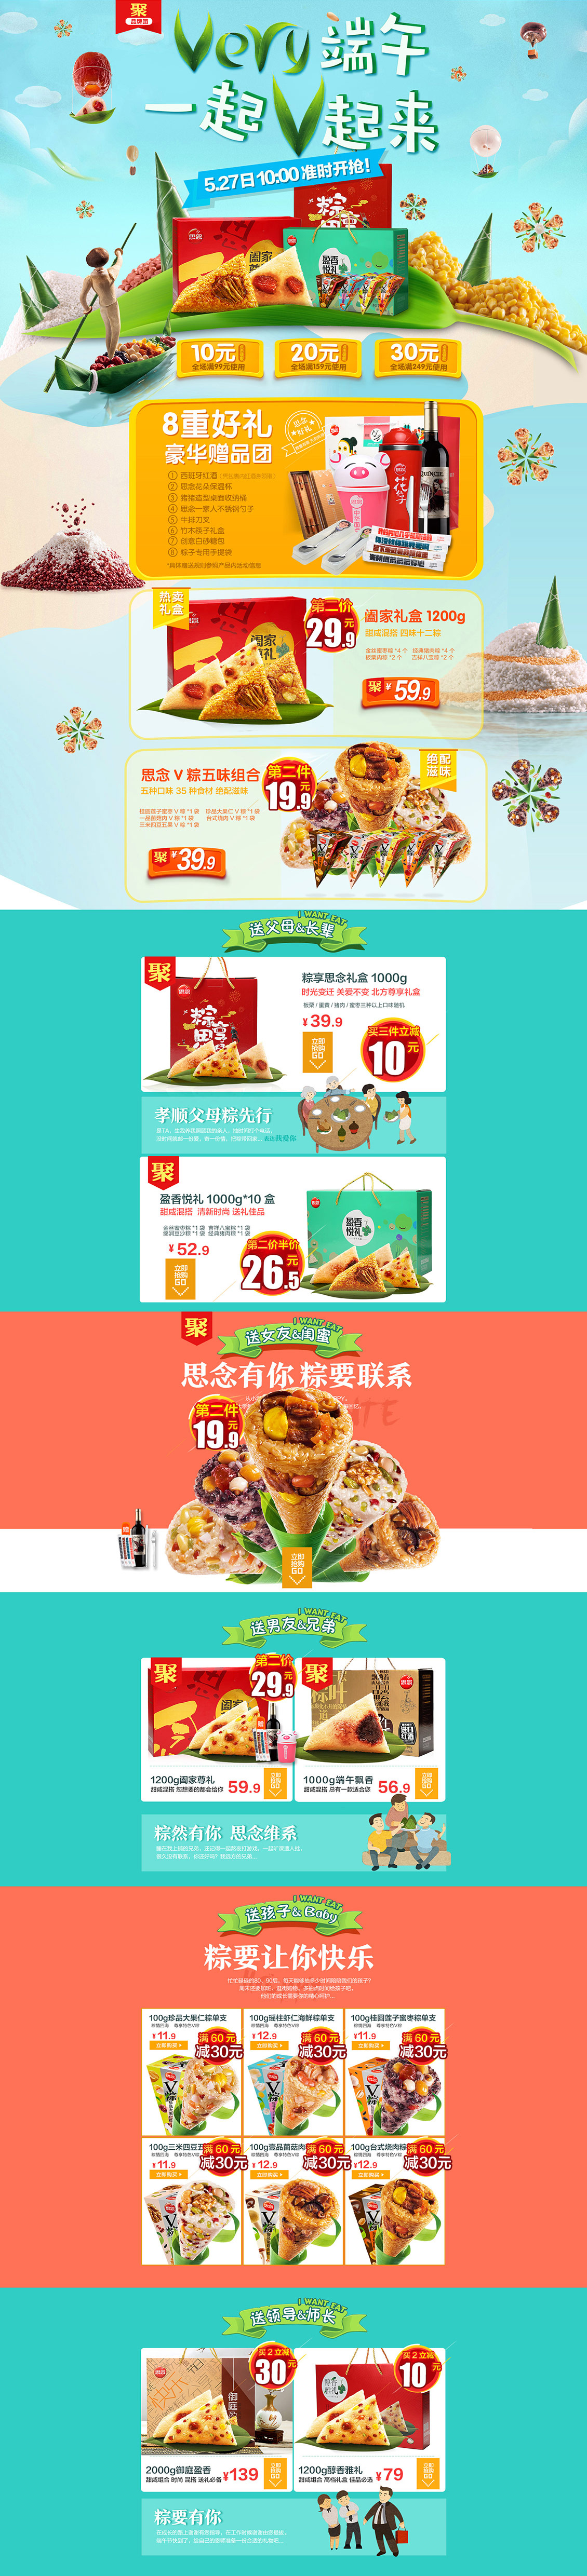 淘宝美工妮可端午节粽子食品零食 天猫首页活动专题页面设计作品